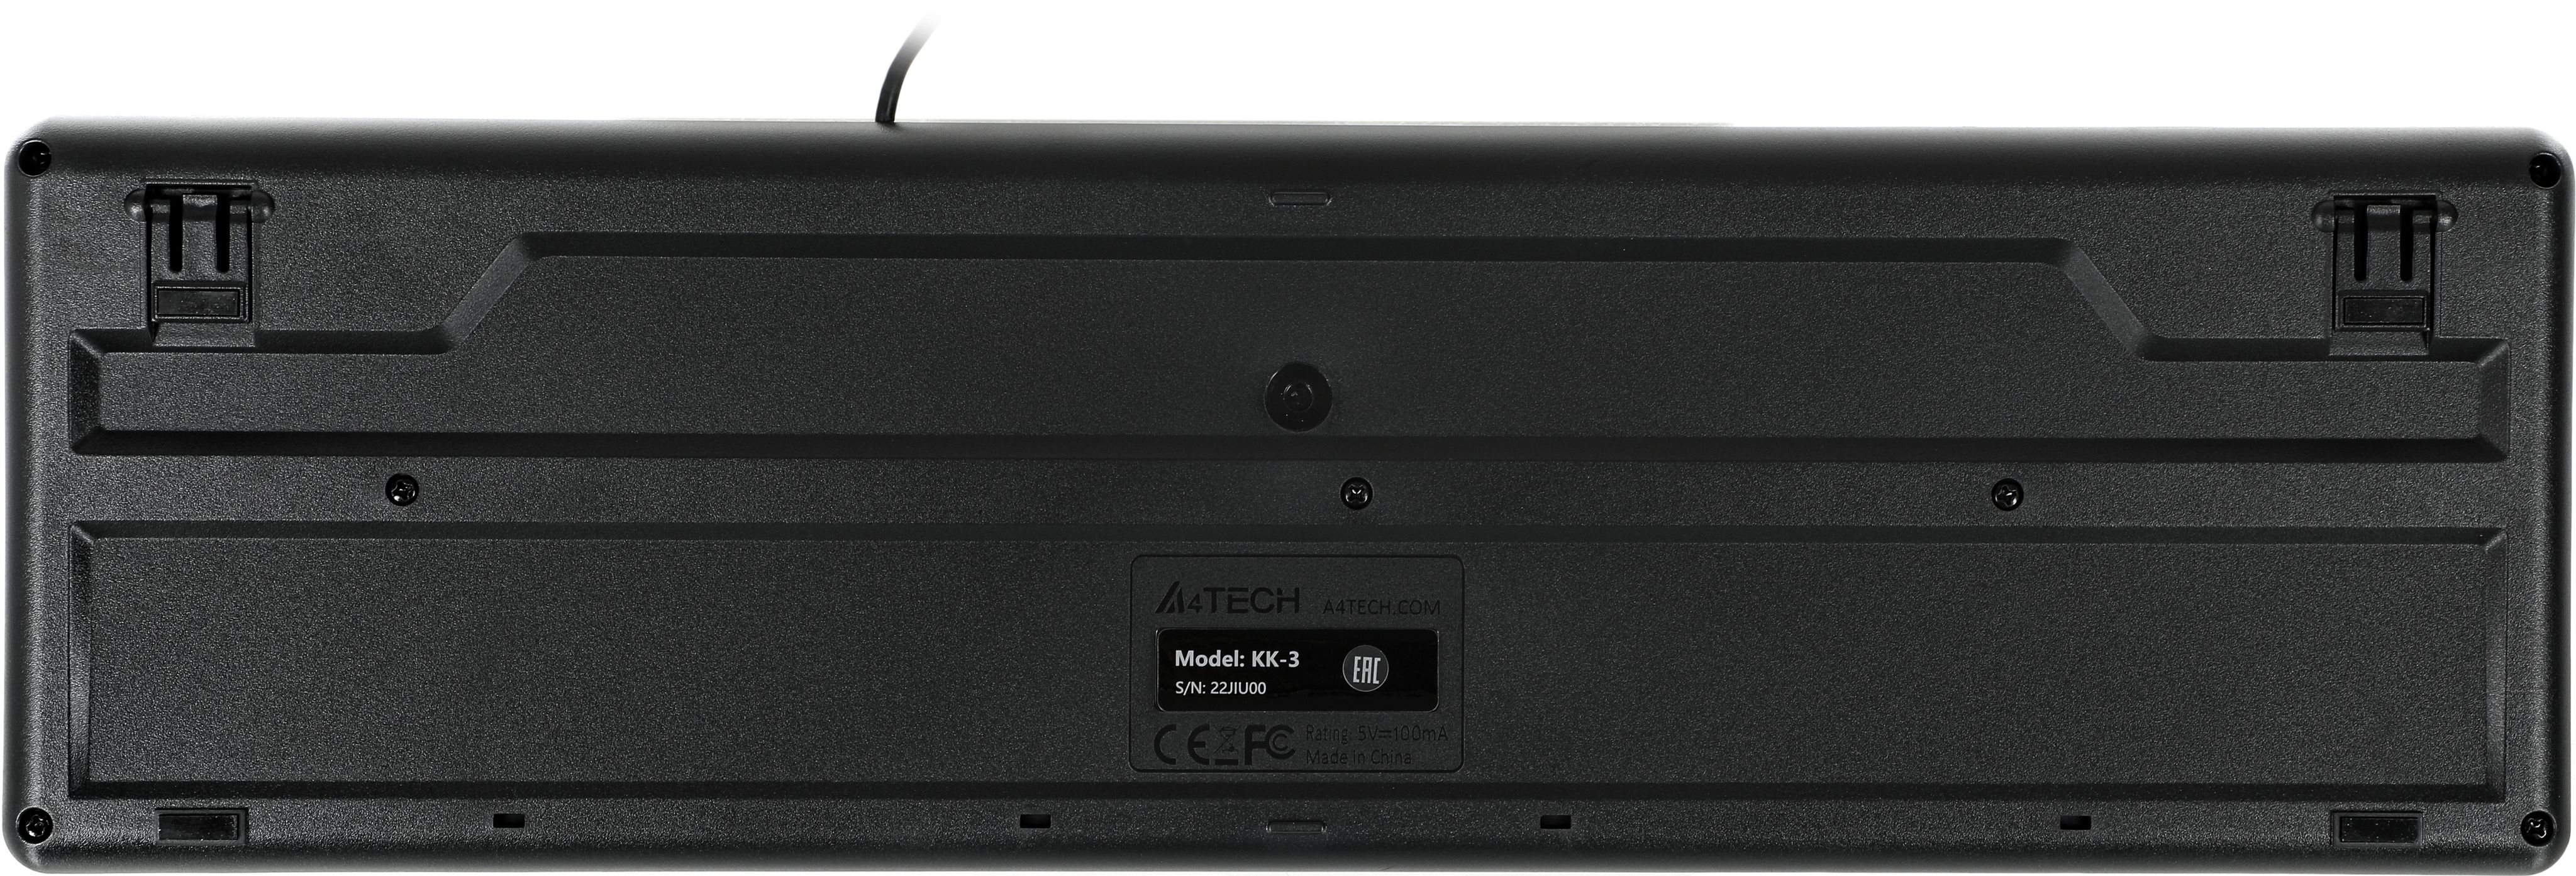 Kk 3330s. A4tech KK-3. A4tech KK-3 (KK-3 USB Black). Клавиатура проводная a4tech KK-3 черный (KK-3 USB Black). A4tech KK-3330.